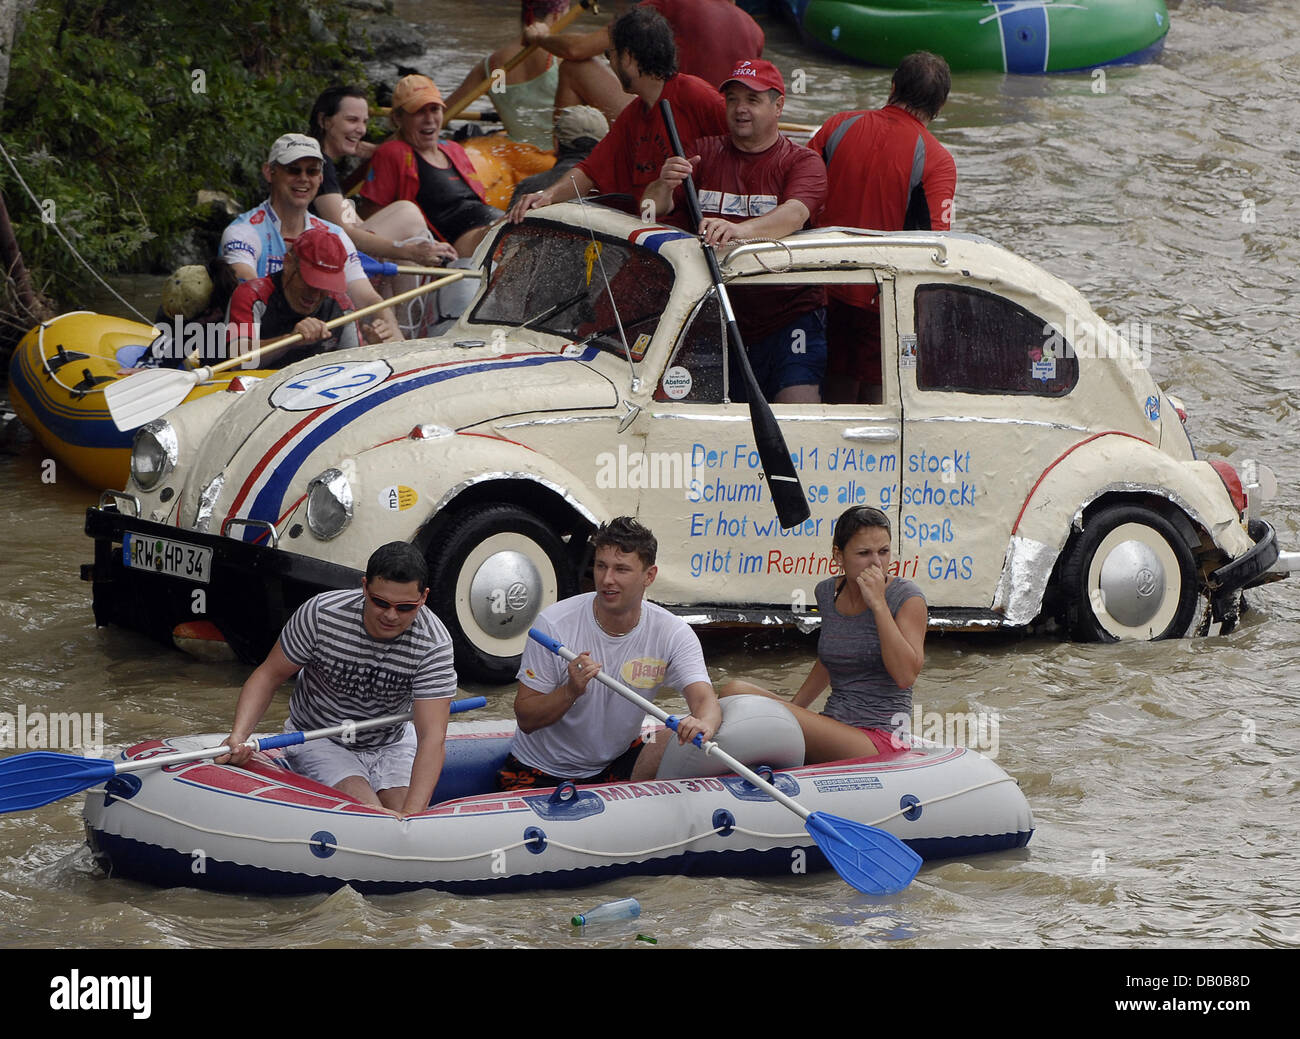 Les participants passent en aval dans un bateau avec VW Coccinelle, pièces  détachées et autres navires pendant le festival Nabadda sur le Danube à  Ulm, Allemagne, le 23 juillet 2007. Plusieurs milliers